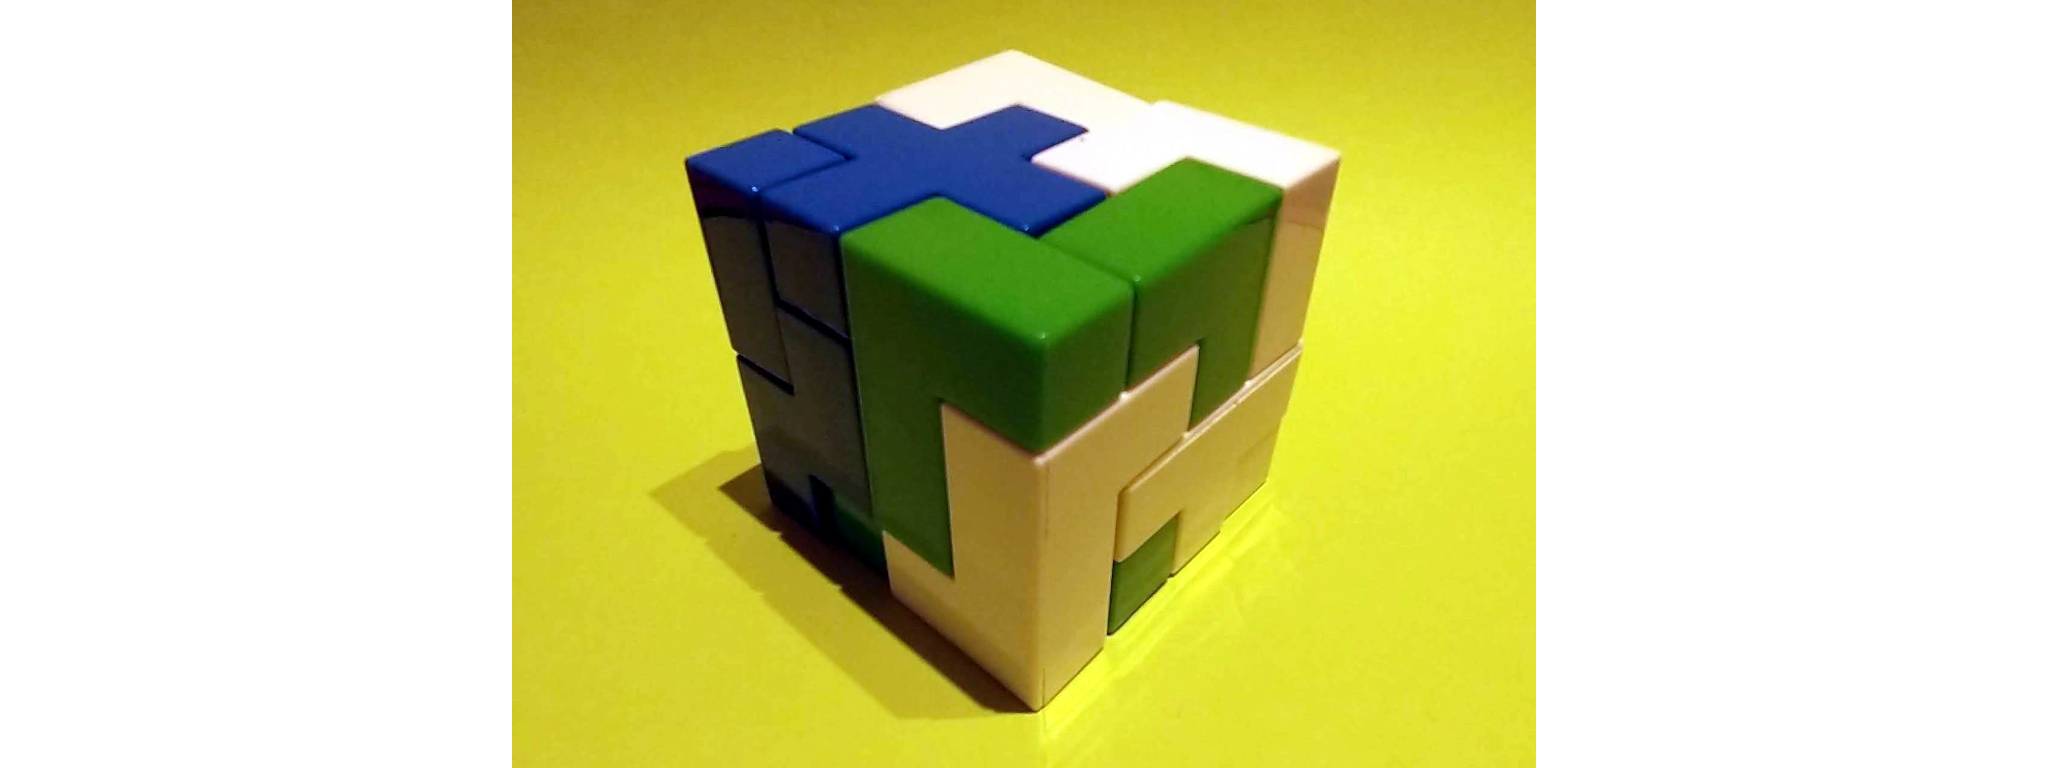 Assembled cube